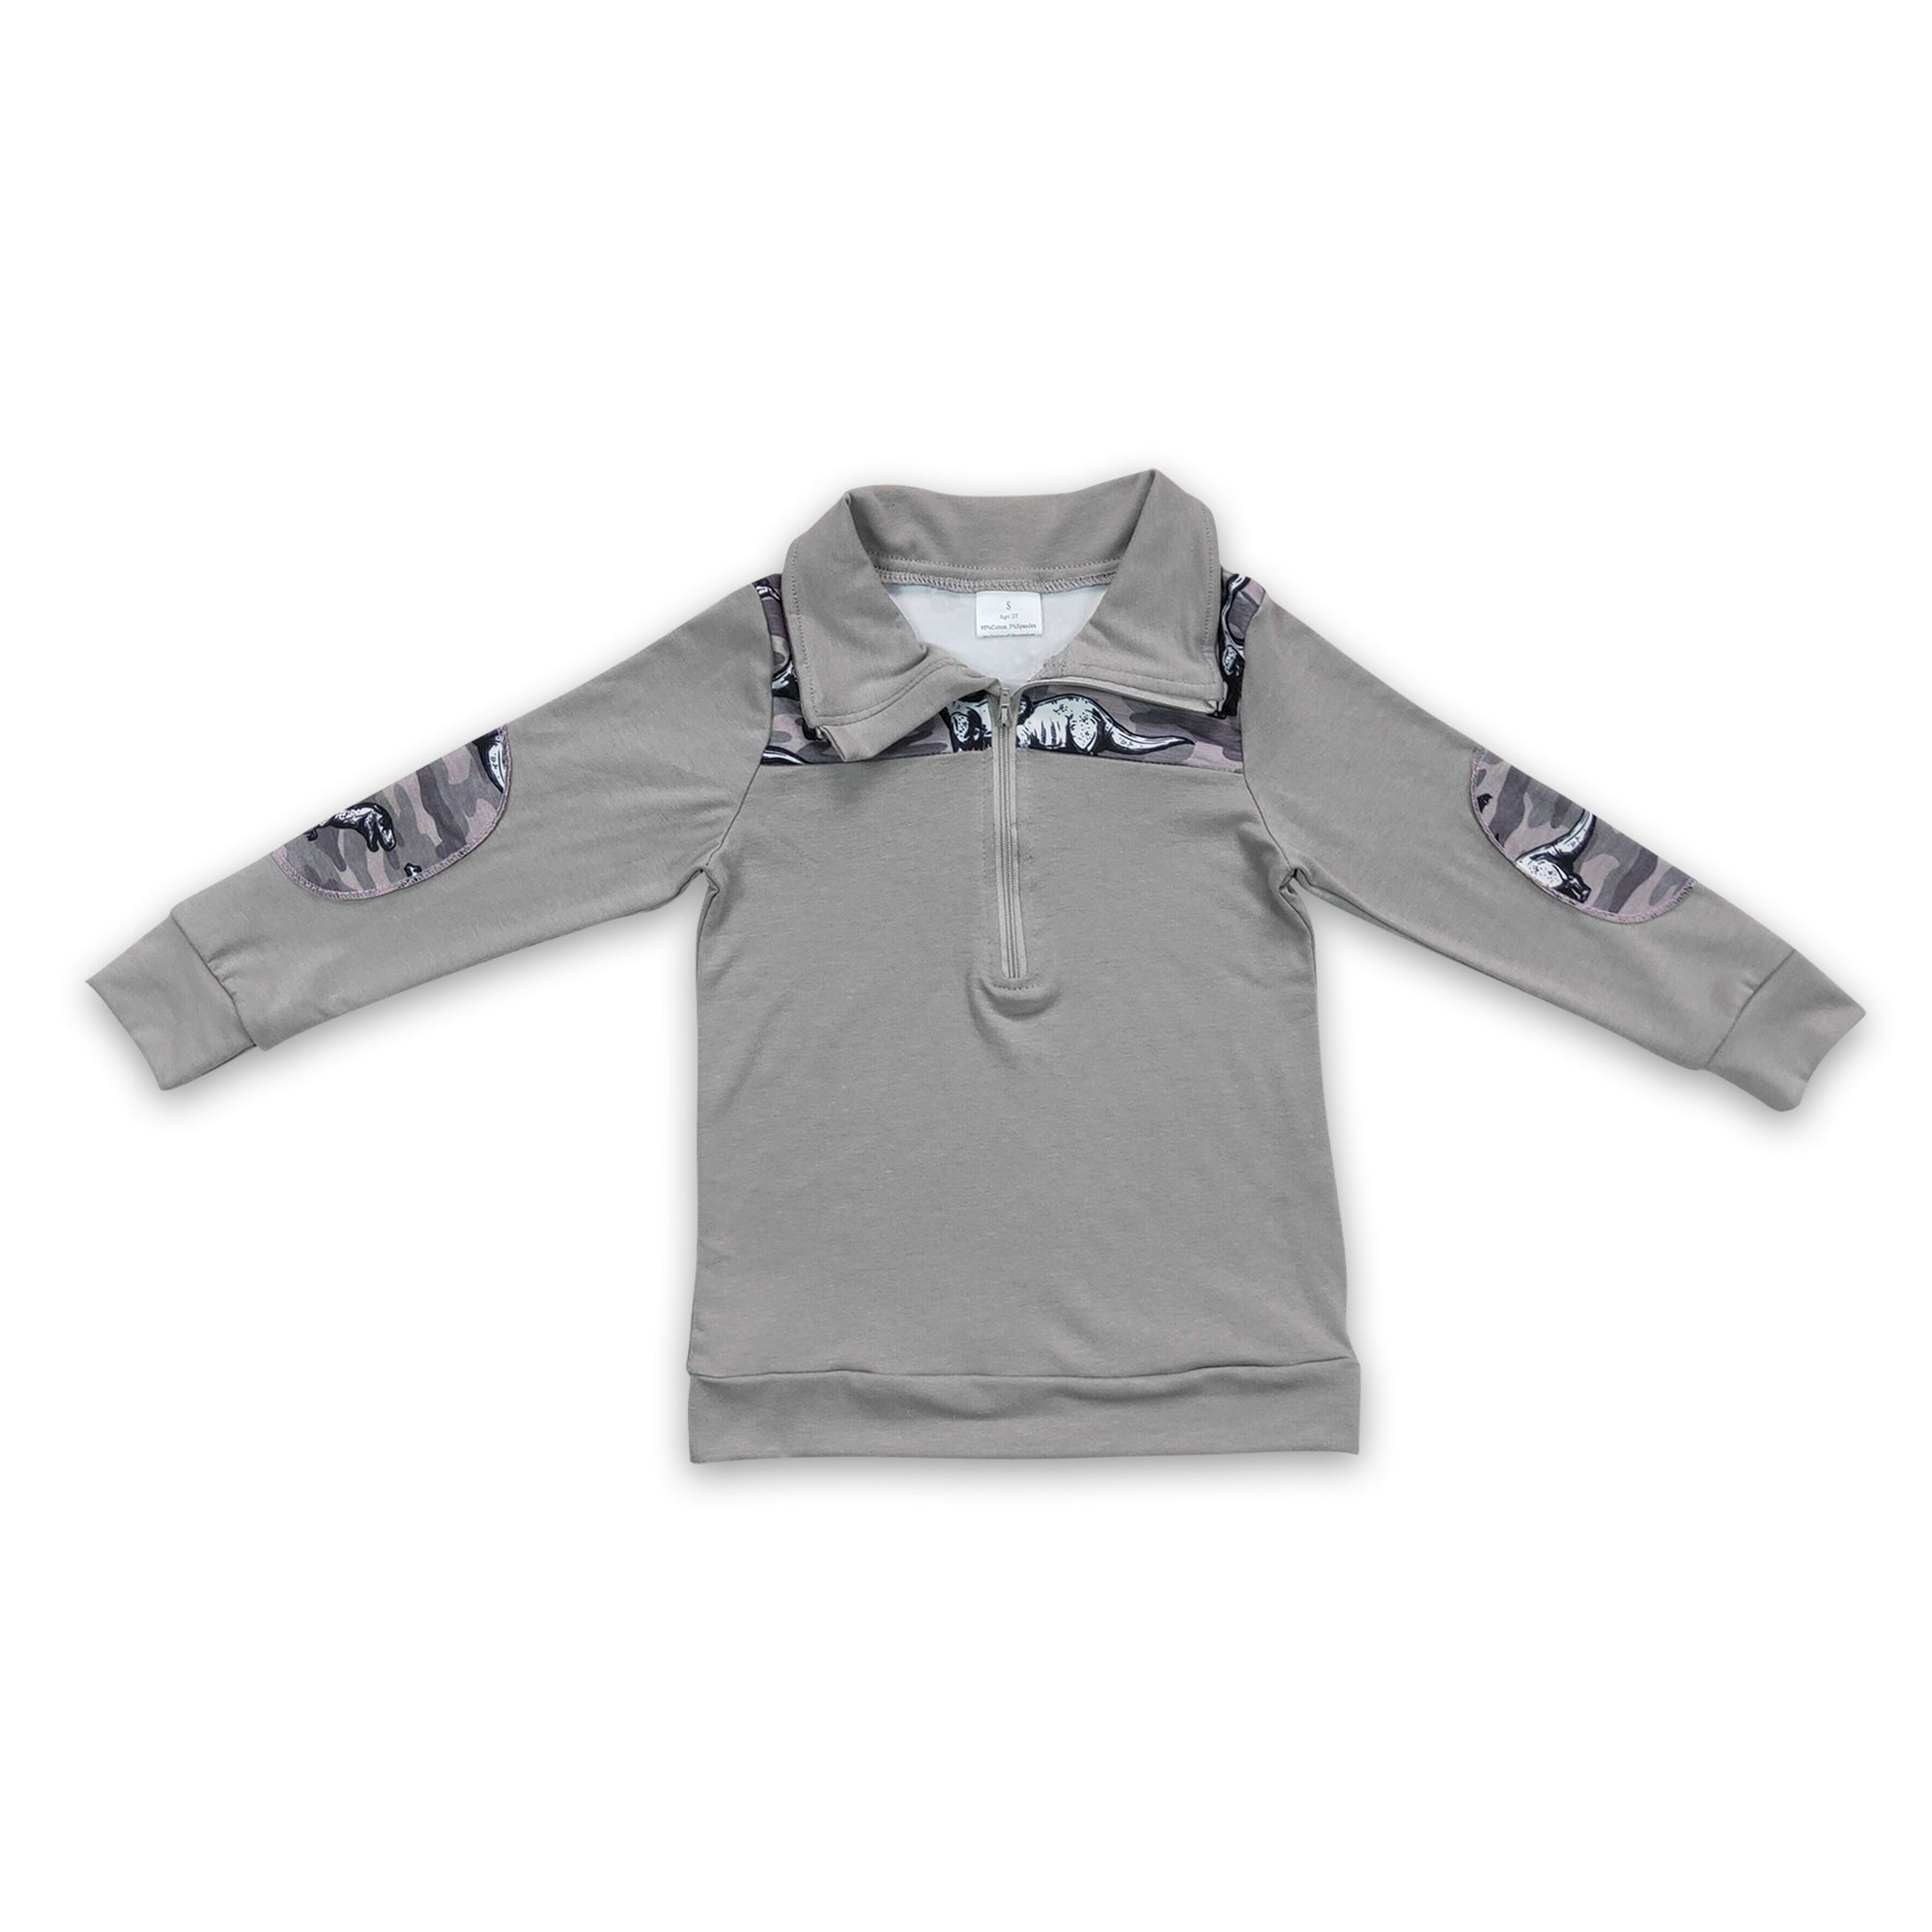 BT0106 baby boy clothes grey zipper winter shirt